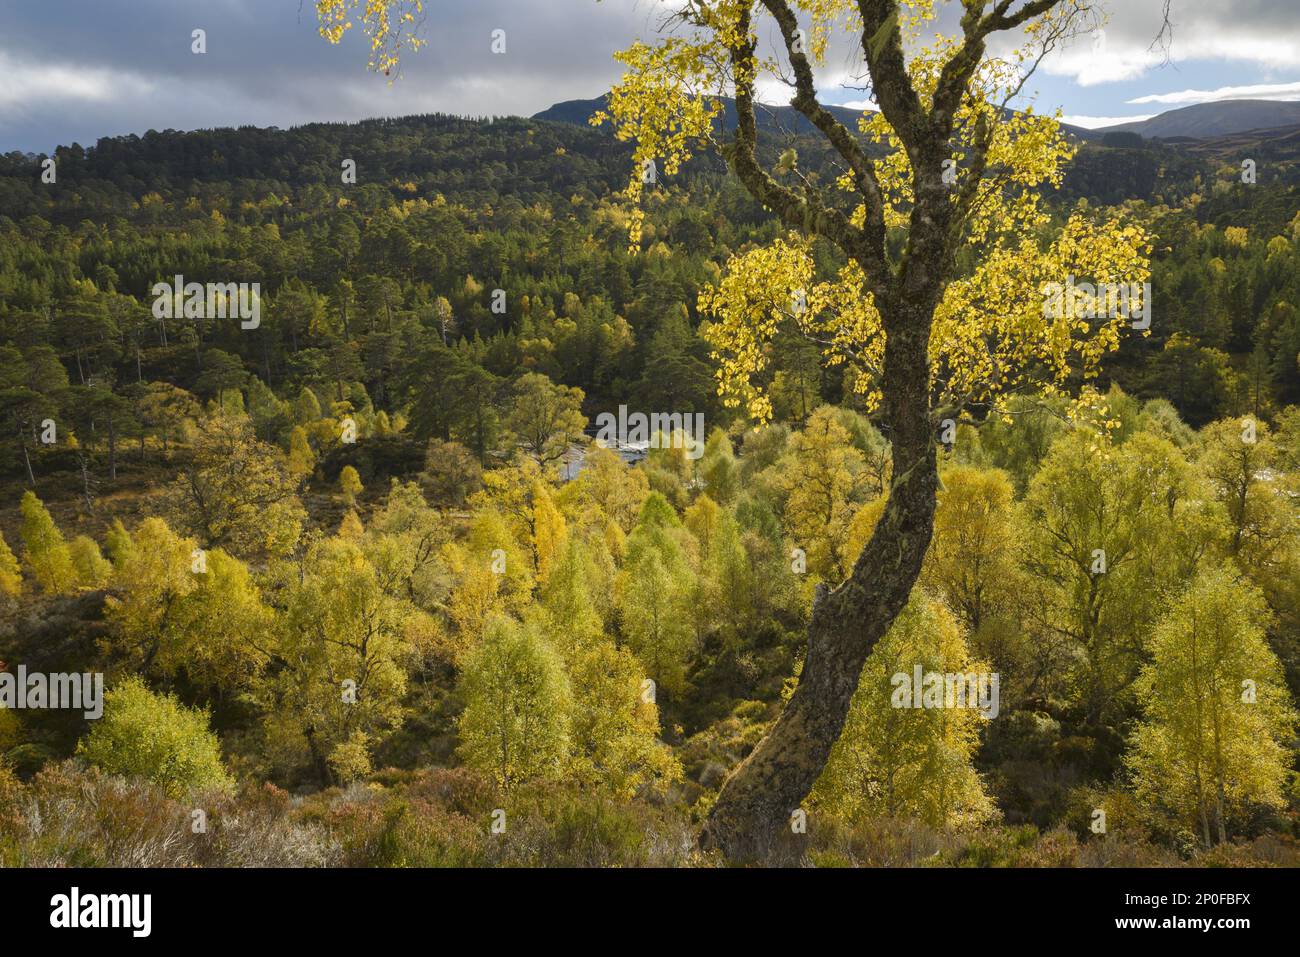 Bois de bouleau verni (Betula pendula) et de pin sylvestre (Pinus sylvestris) autour de la rivière Affric, Glen Affric, Highlands, Écosse. Octobre 2015 Banque D'Images